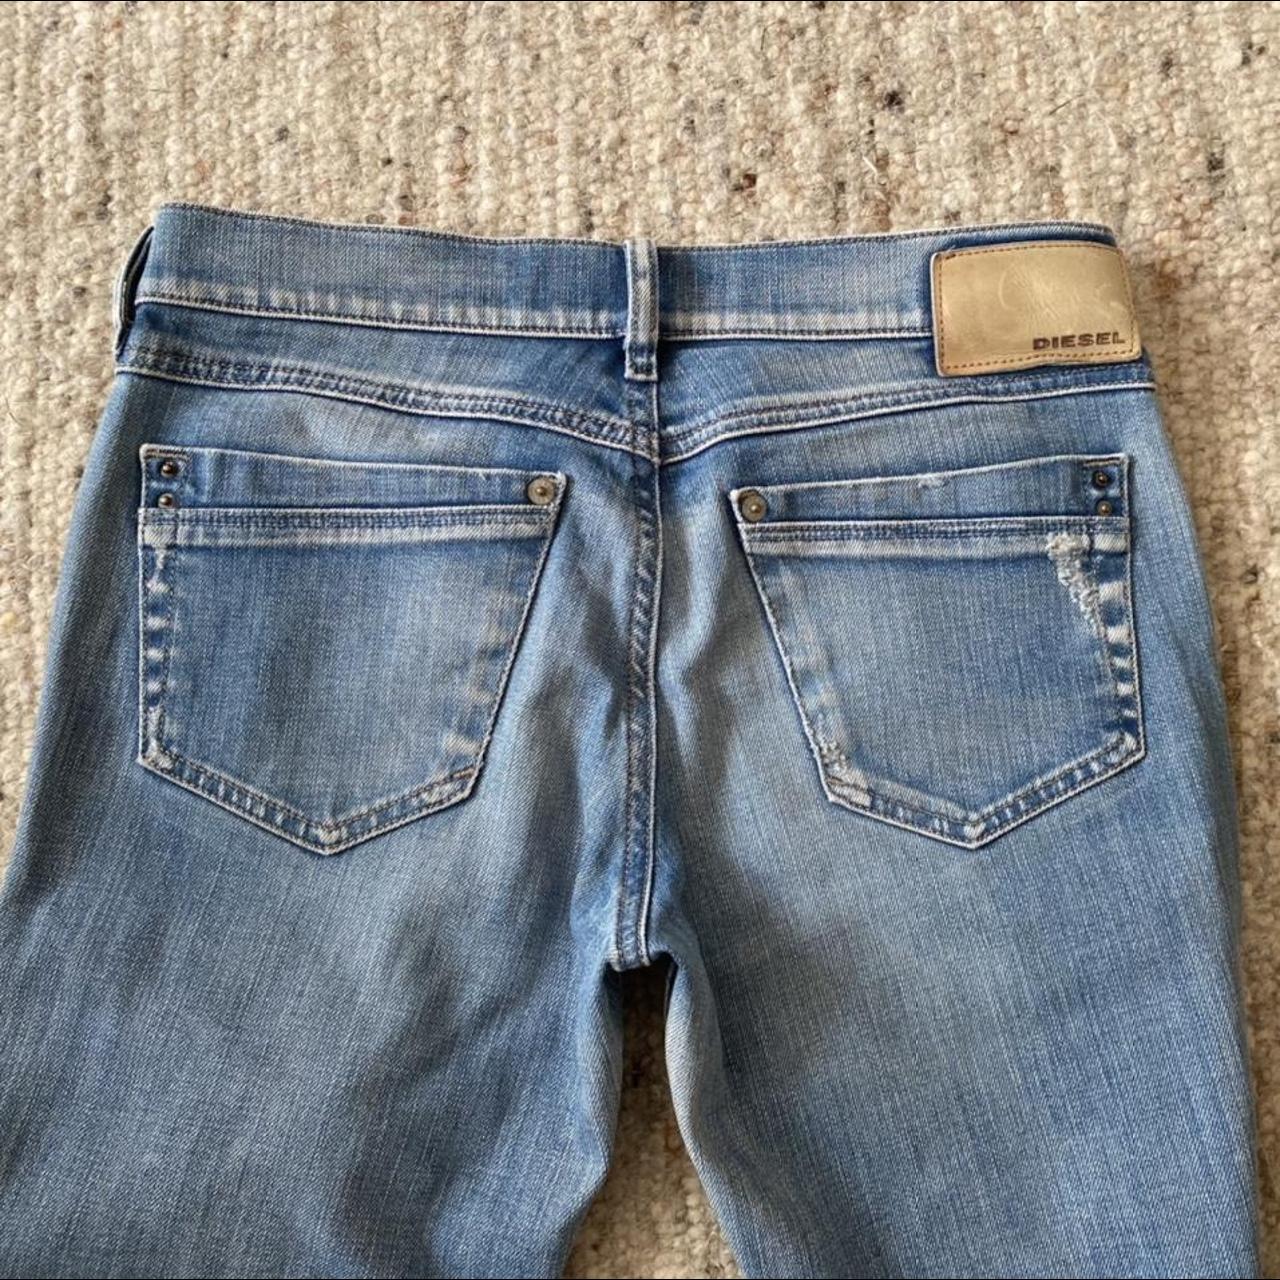 Diesel Ronhoir Regular Bootcut jeans Wash... - Depop